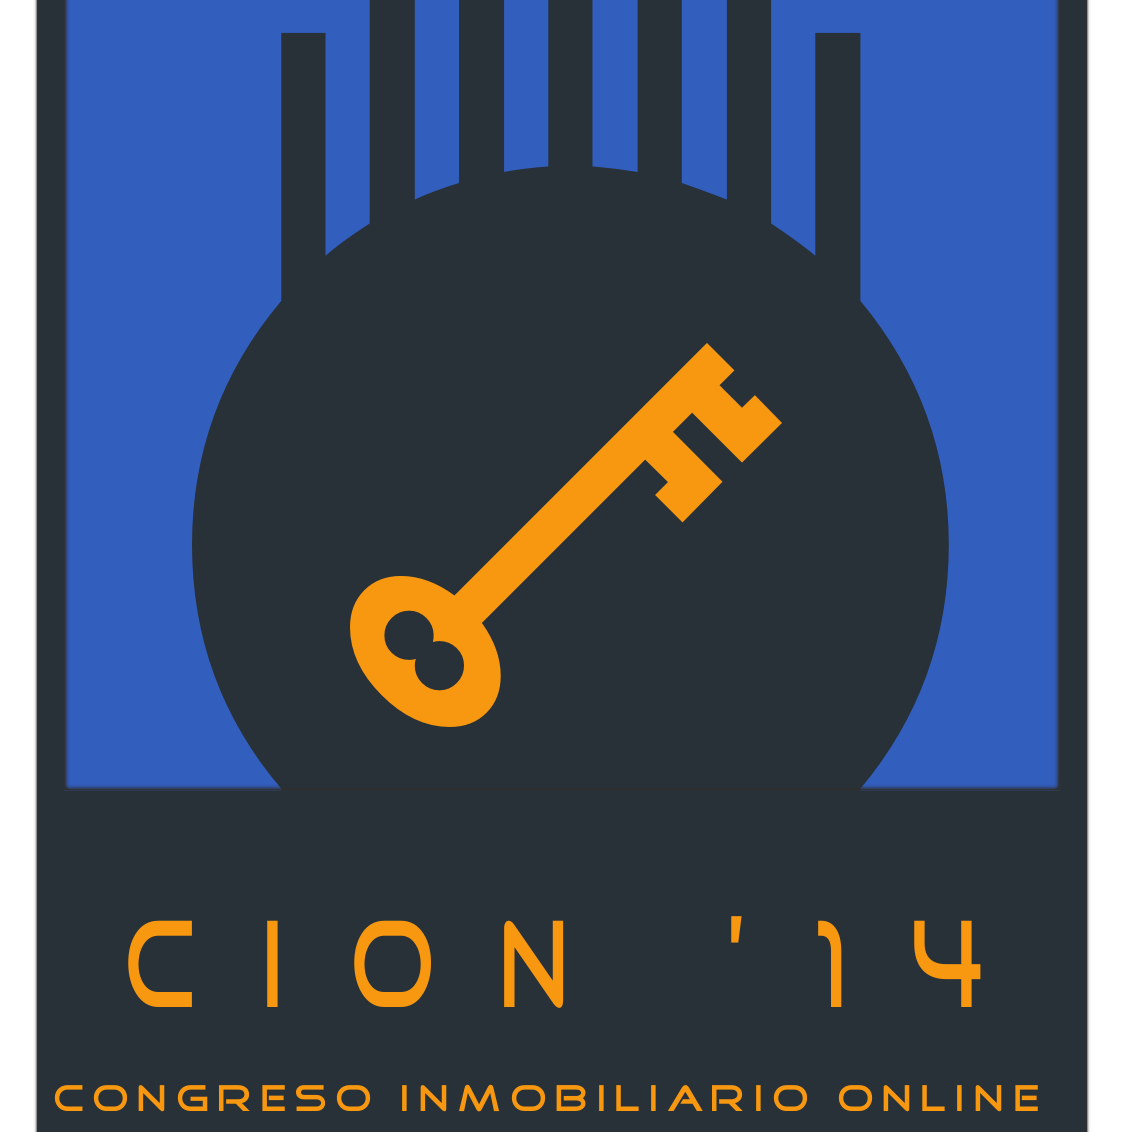 CION es un congreso diseñado por y para gente interesada en la maravillosa familia de inversión que son los inmuebles. #CION2014